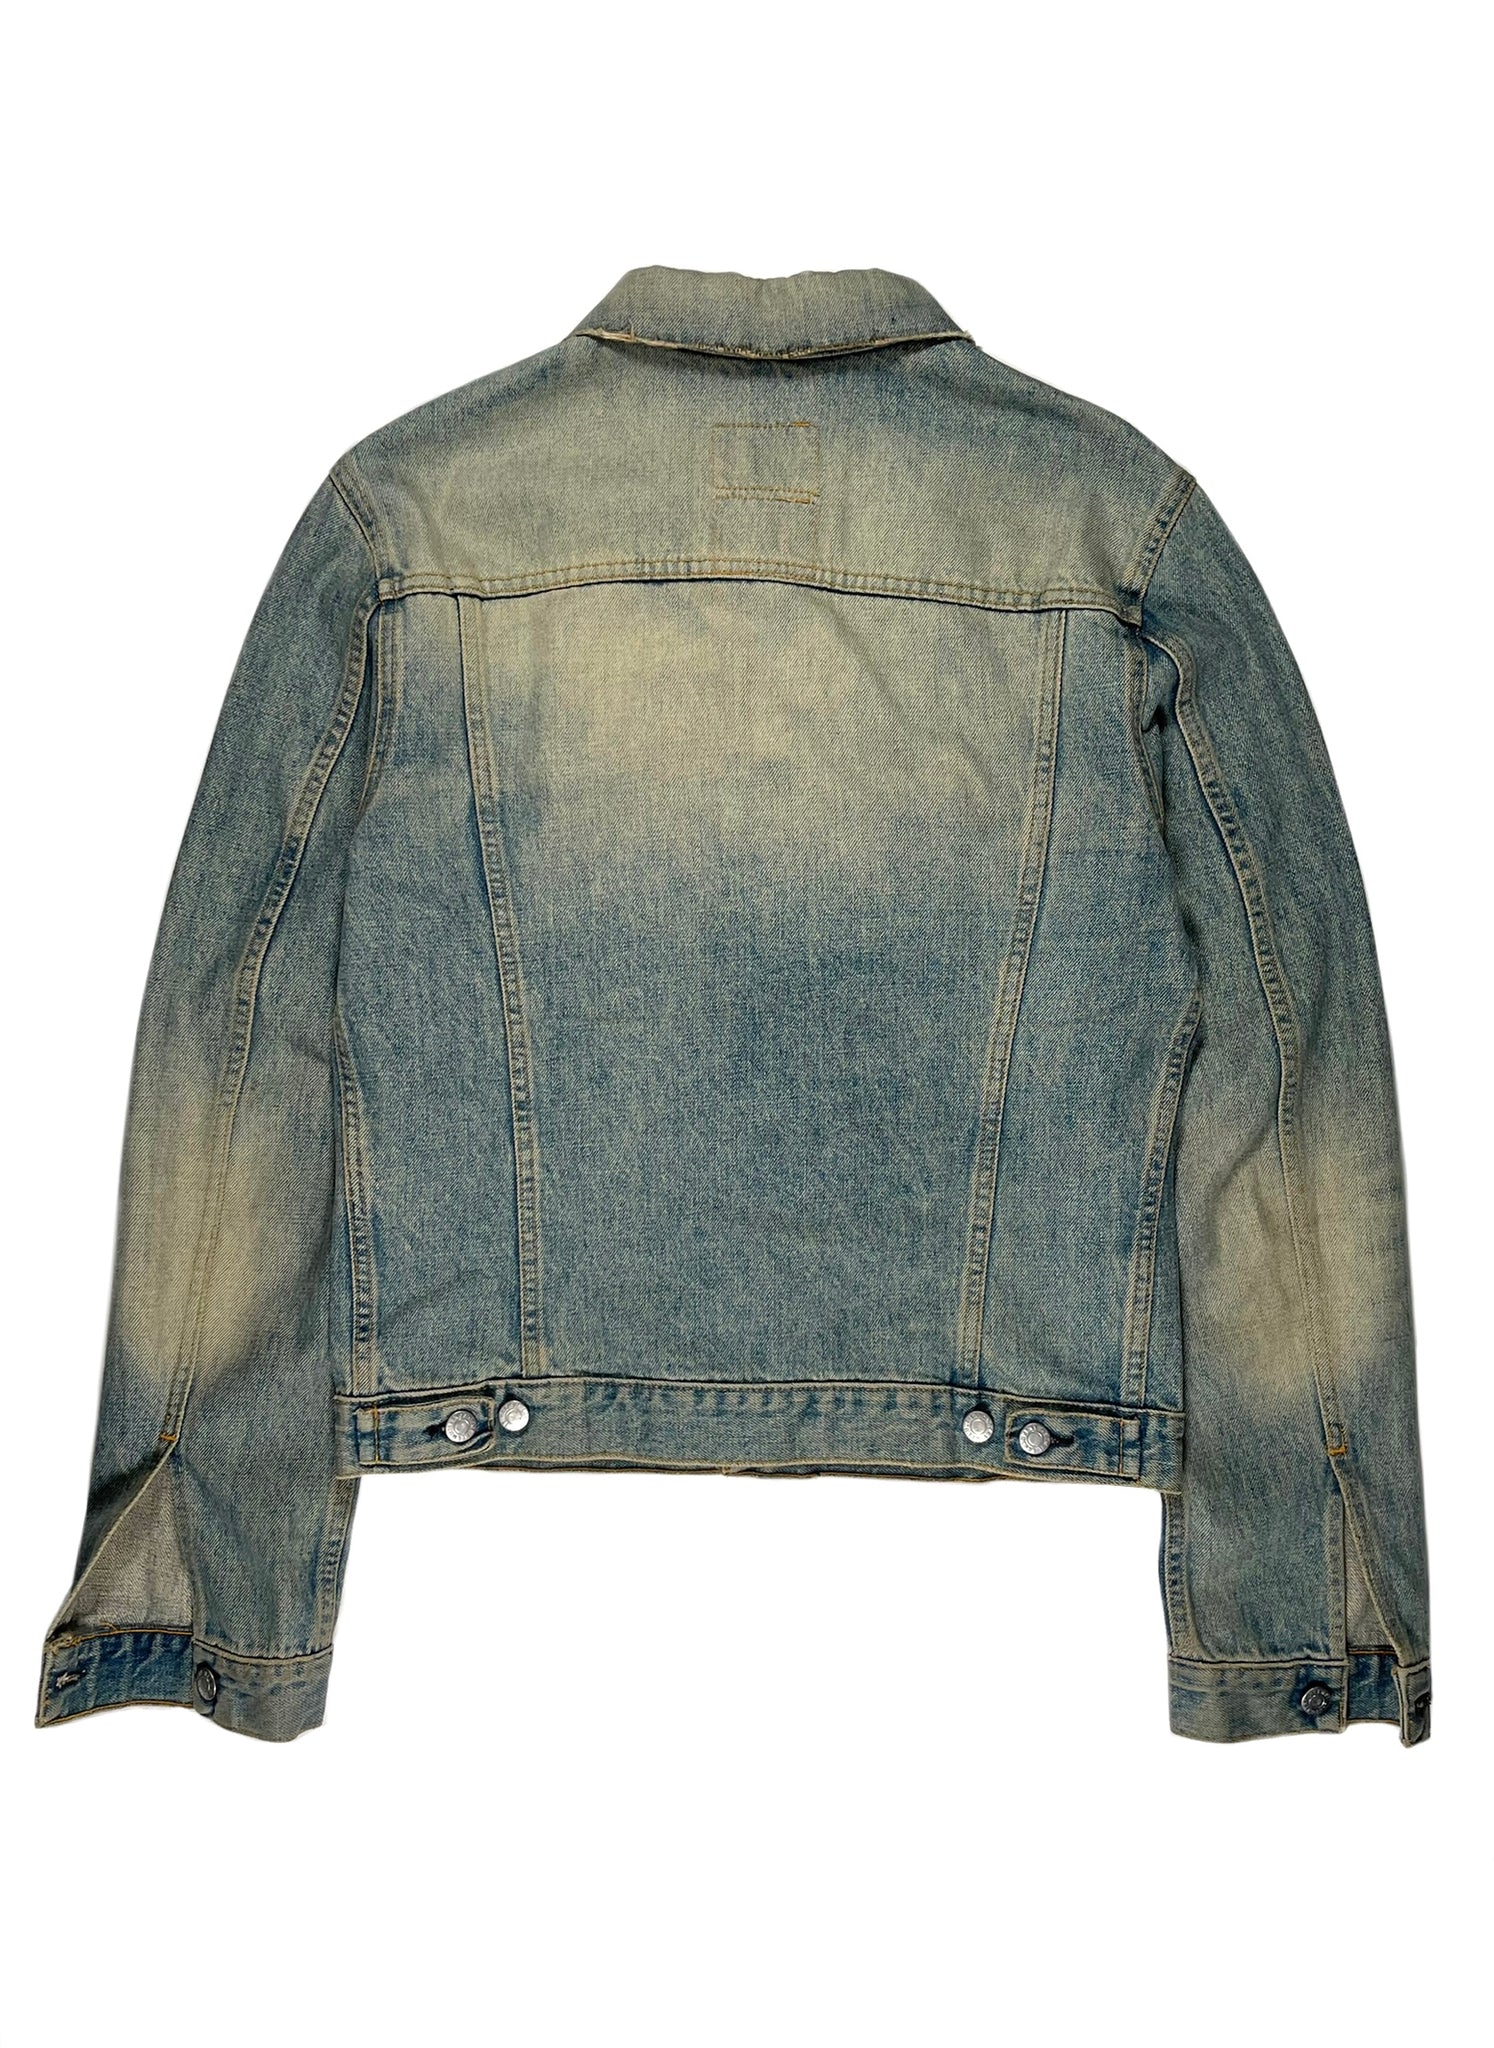 Helmut Lang 2002 Vintage Sanded Broken Denim 2 Slash Pocket Jacket – ENDYMA